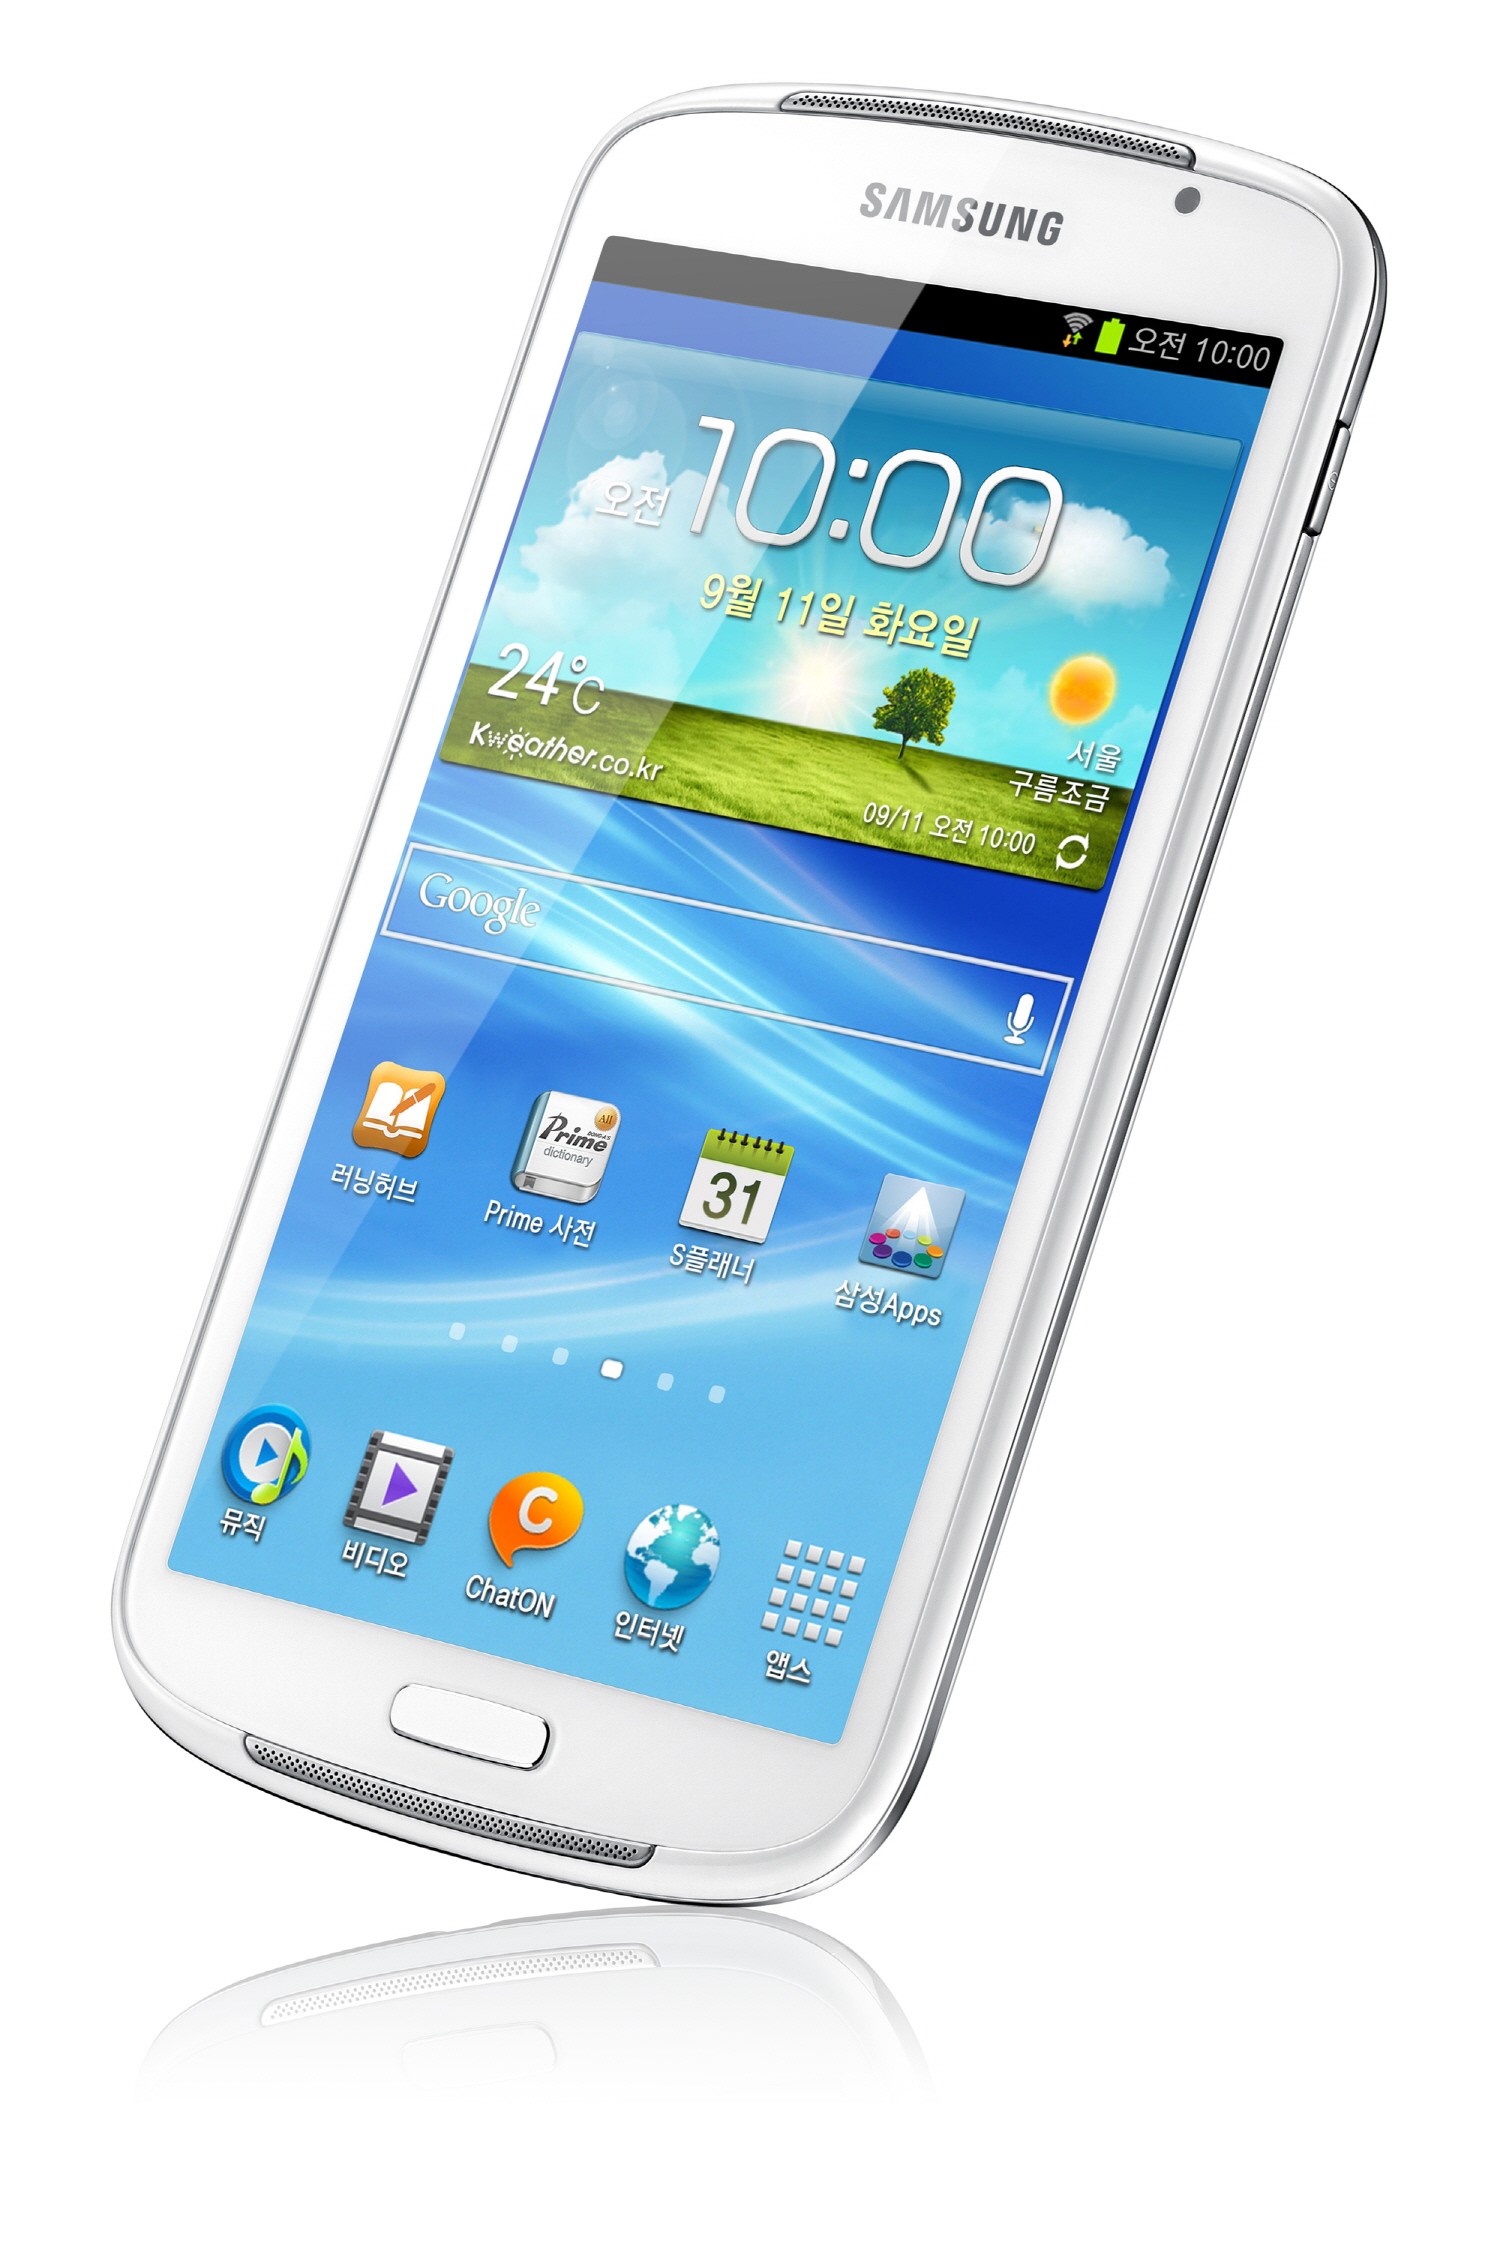 Especificaciones oficiales del Samsung Galaxy Player 5.8